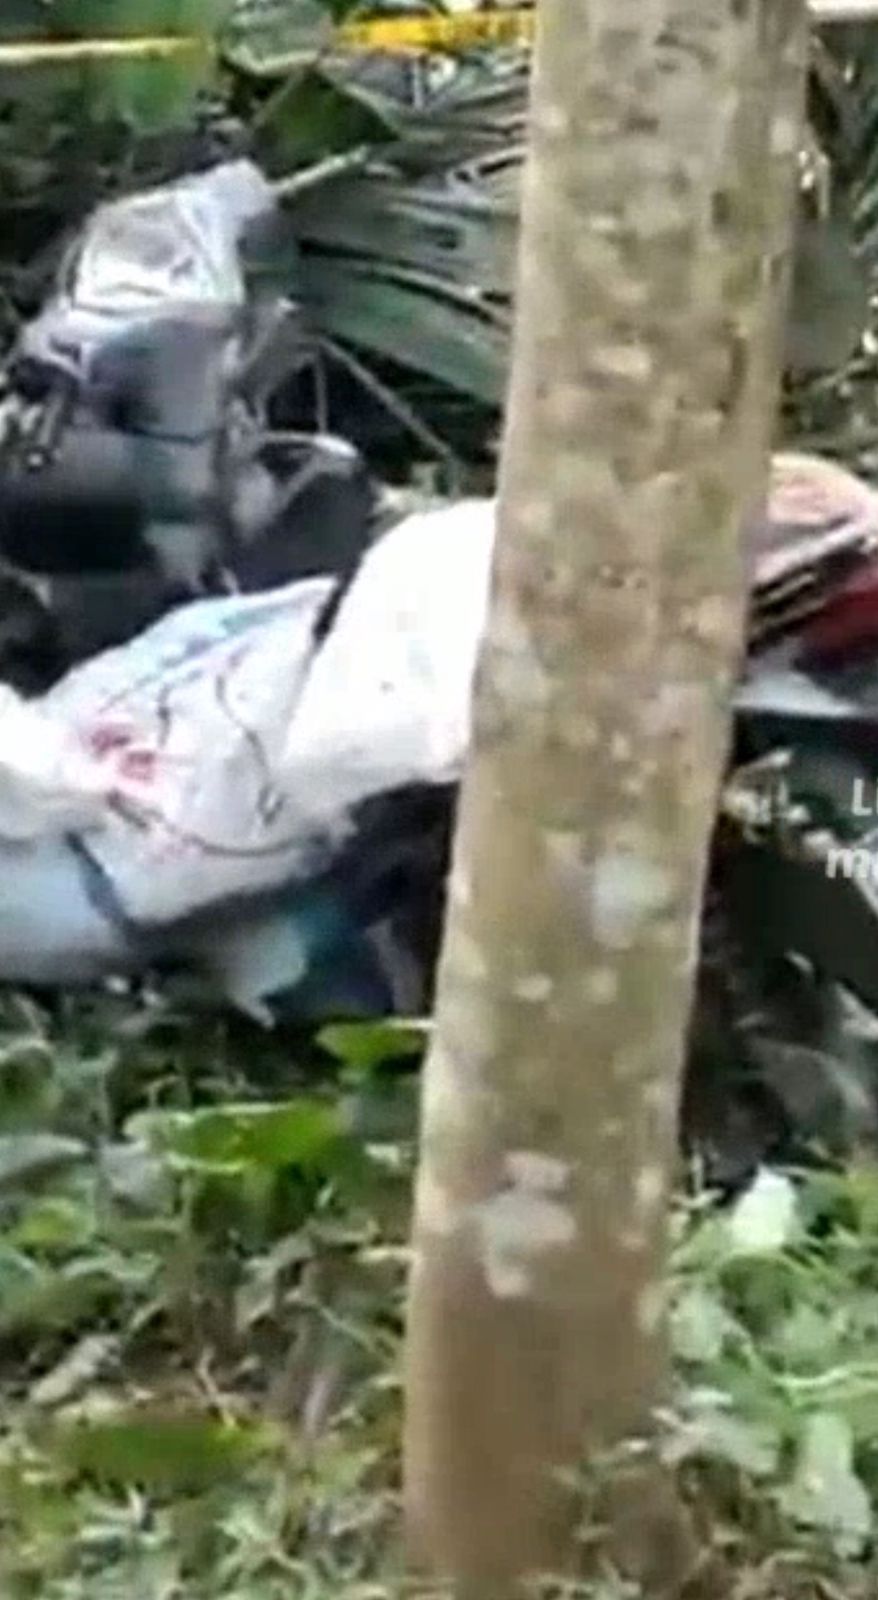 Polres Blitar Kota menyelidiki kasus temuan perempuan yang tewas terbungkus dalam karung di kawasan hutan sengon